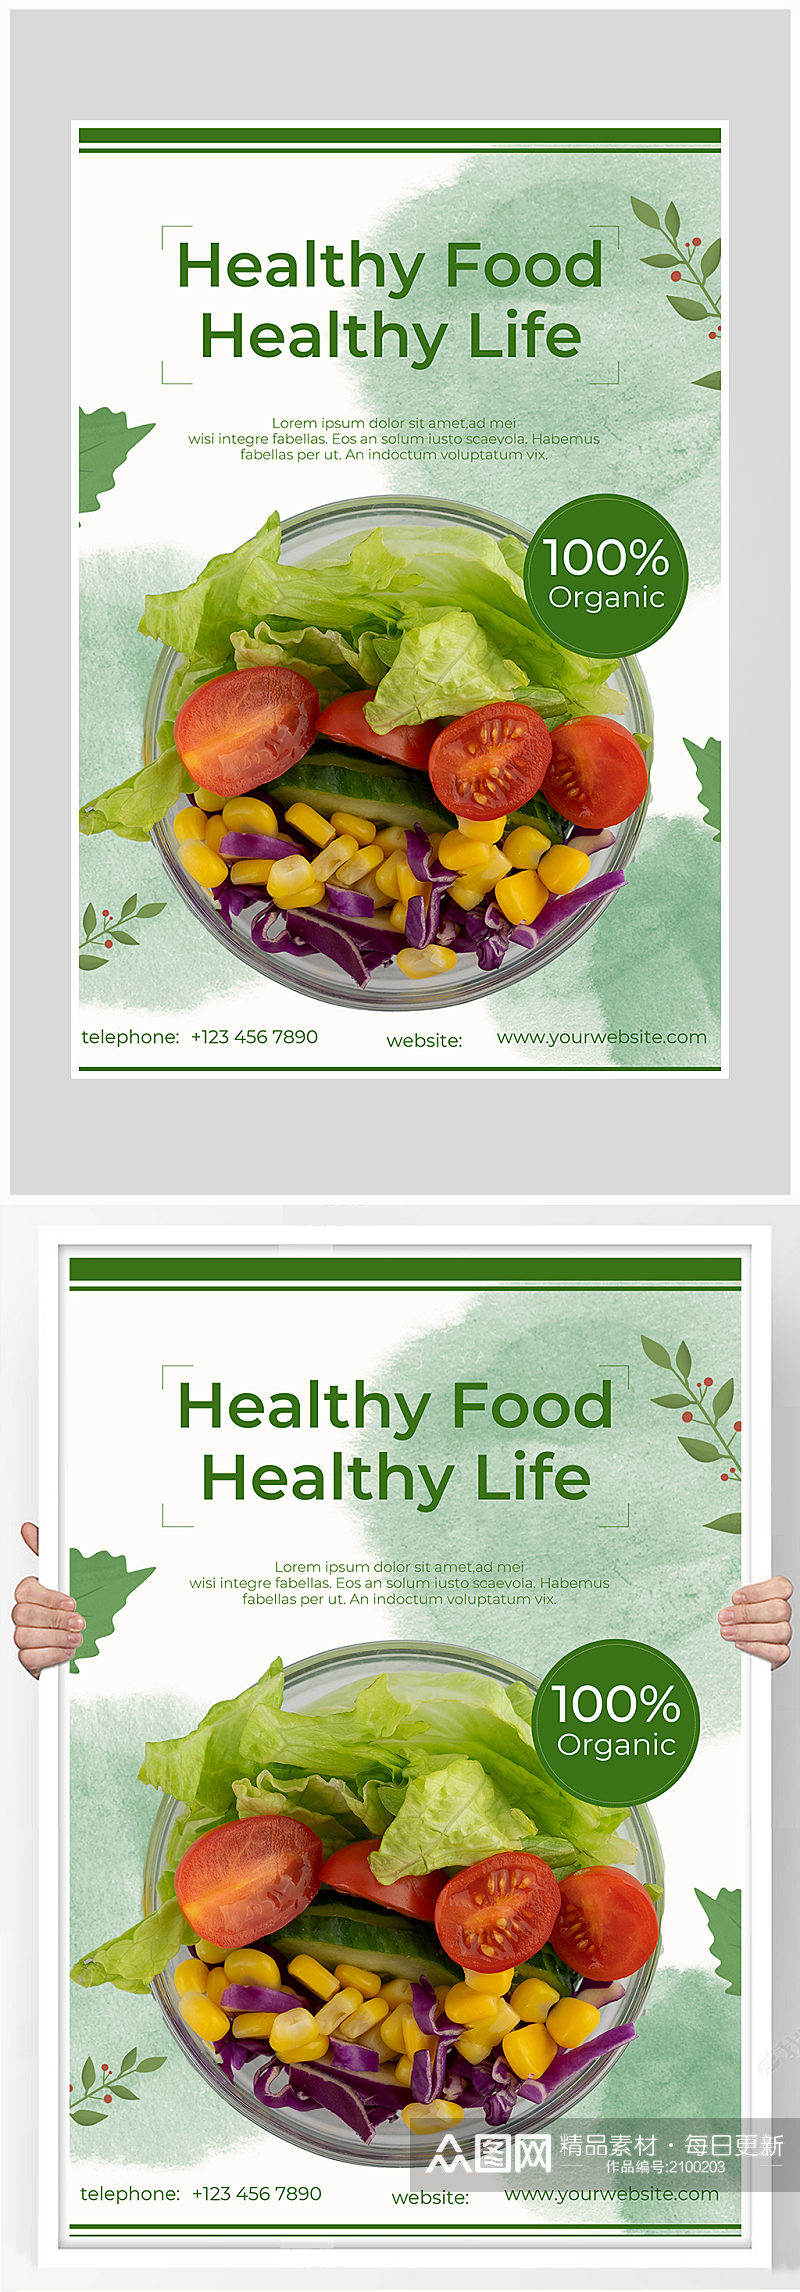 创意清新简约蔬菜青菜海报设计素材